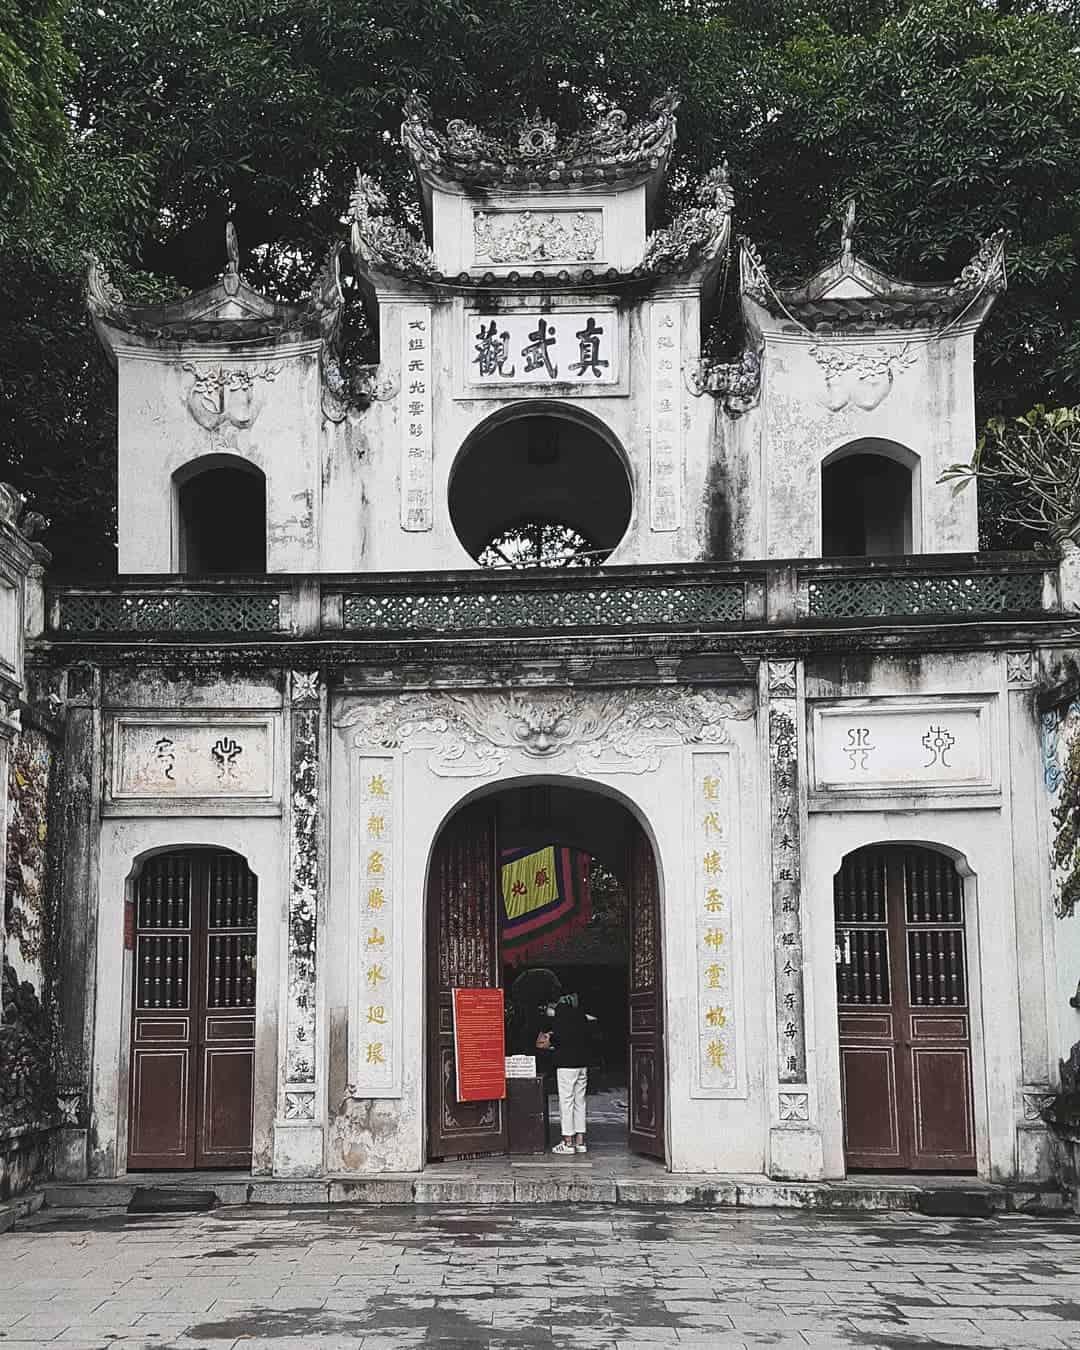 Đền Quán Thánh là địa điểm tâm linh nổi tiếng Hà Nội. Ảnh: @kien.tran.vo